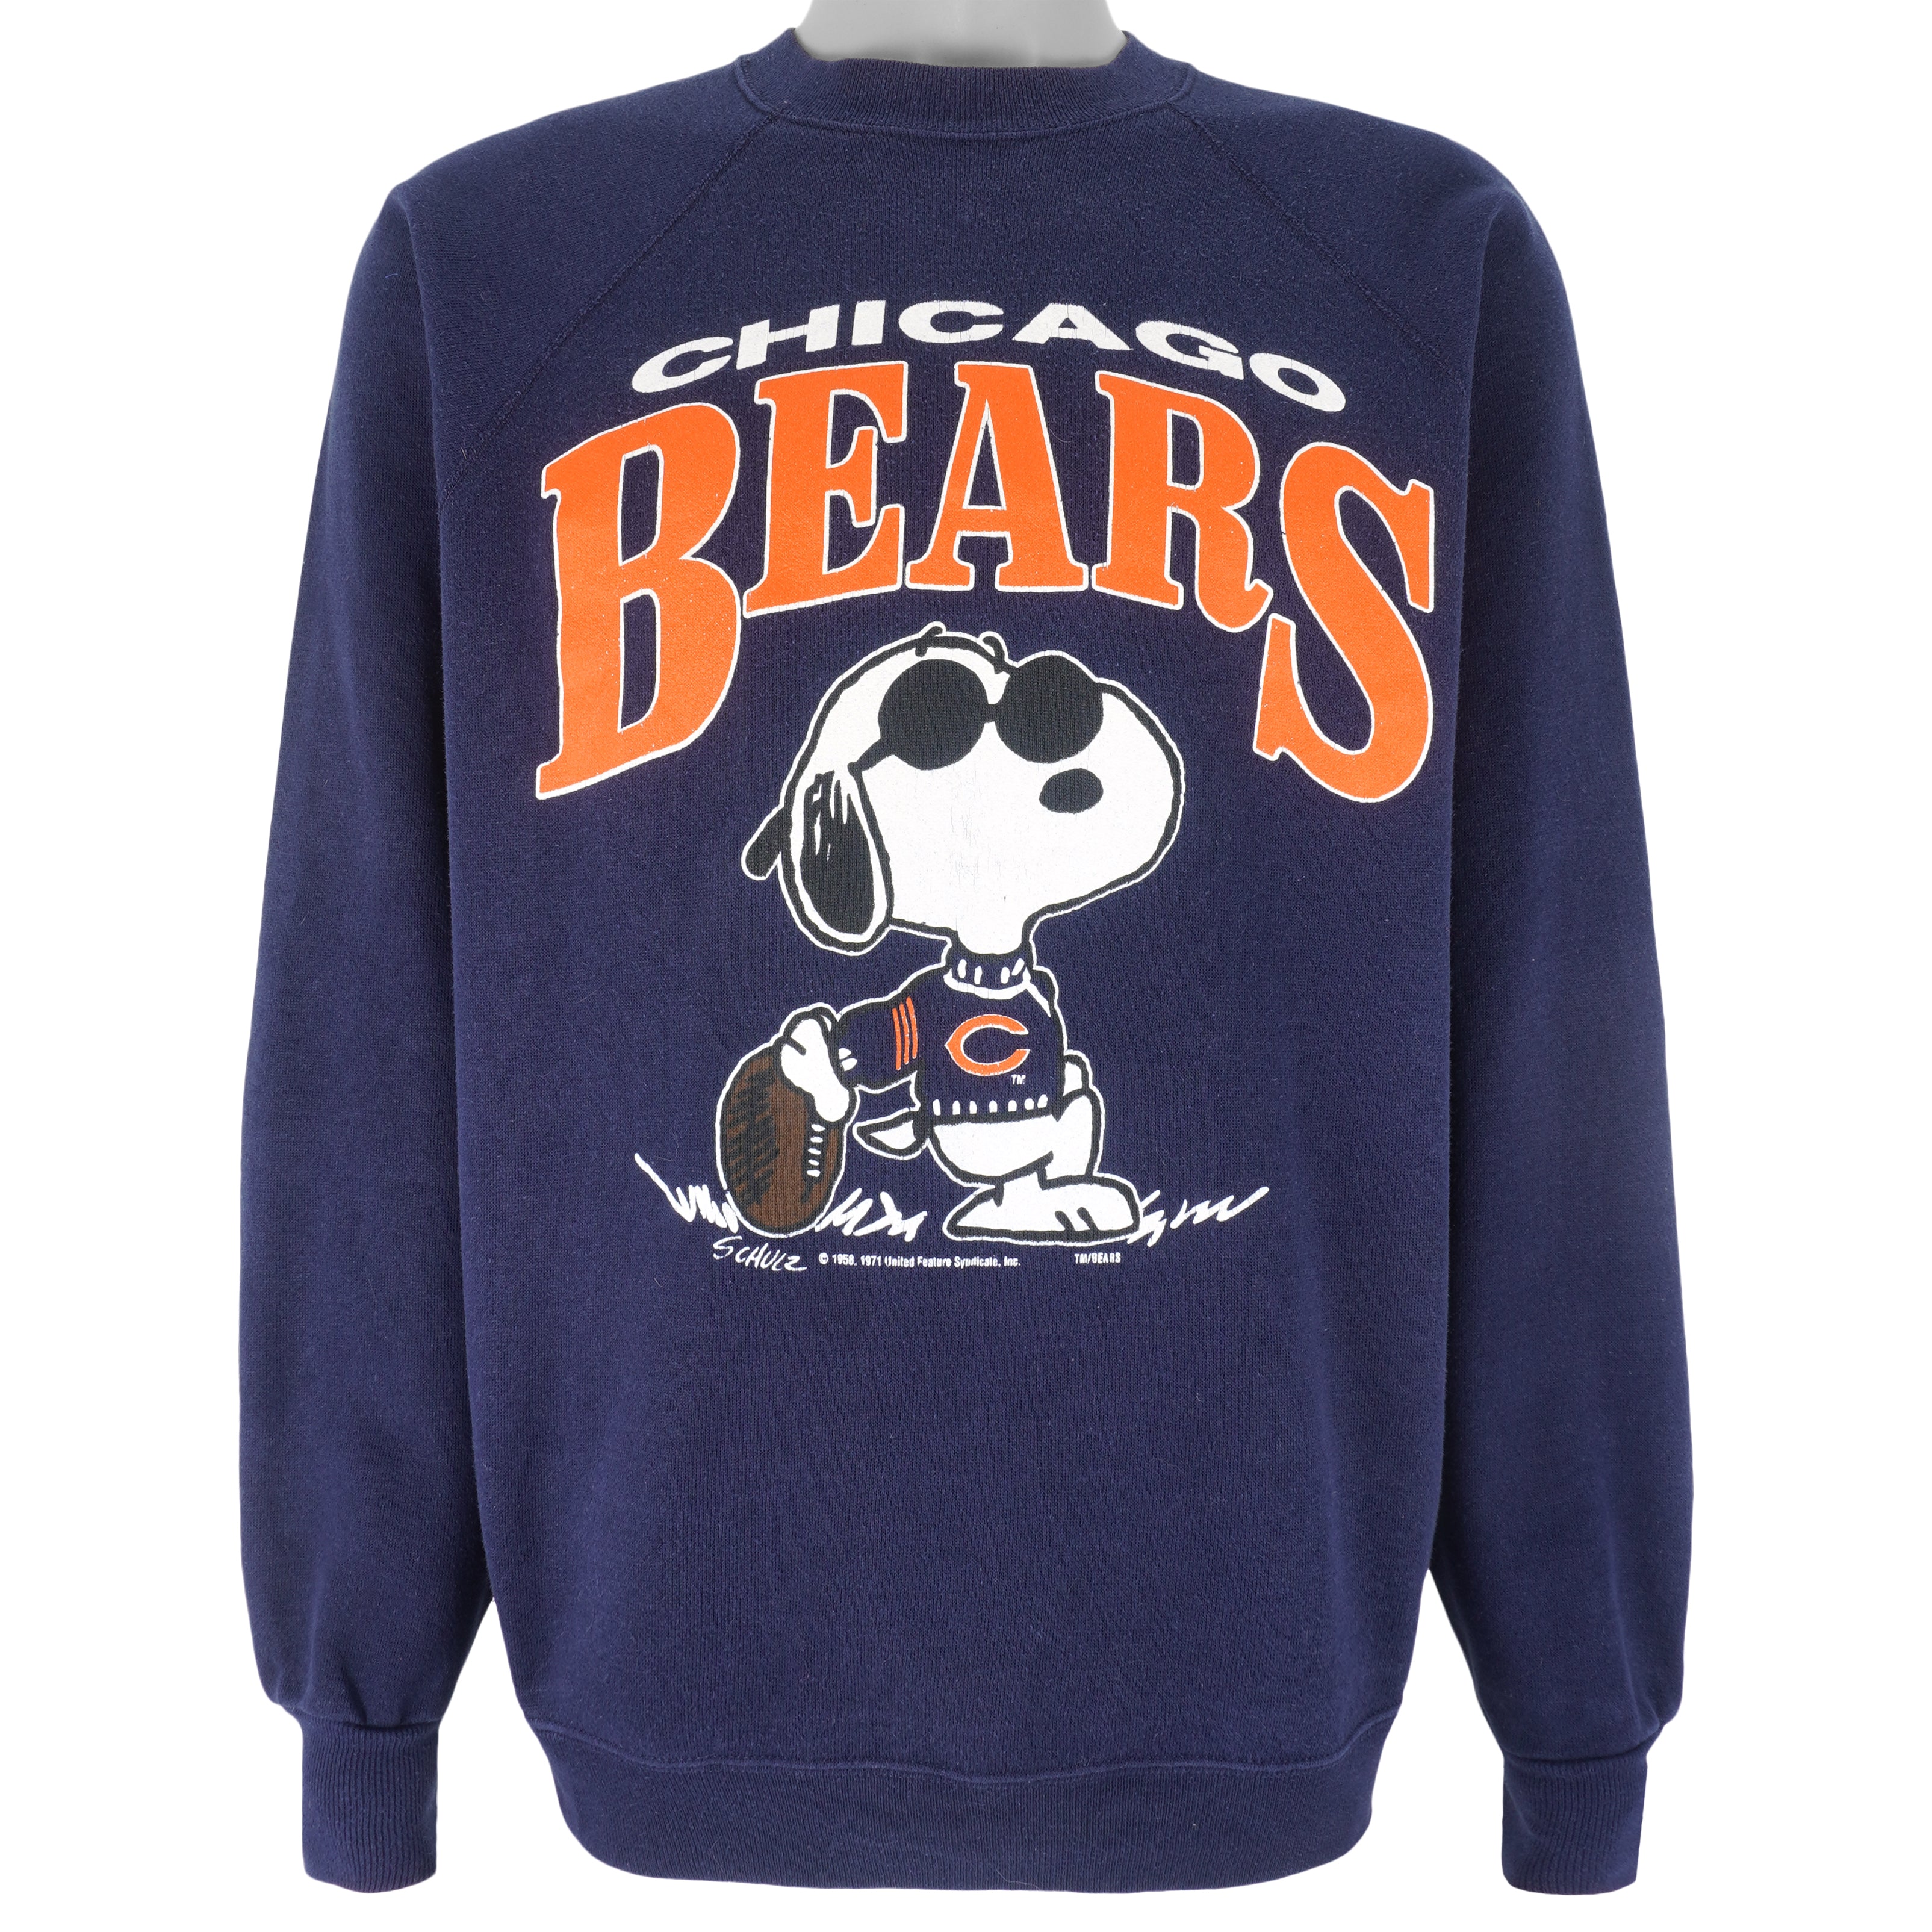 Chicago Bears Dog T-Shirt - Large